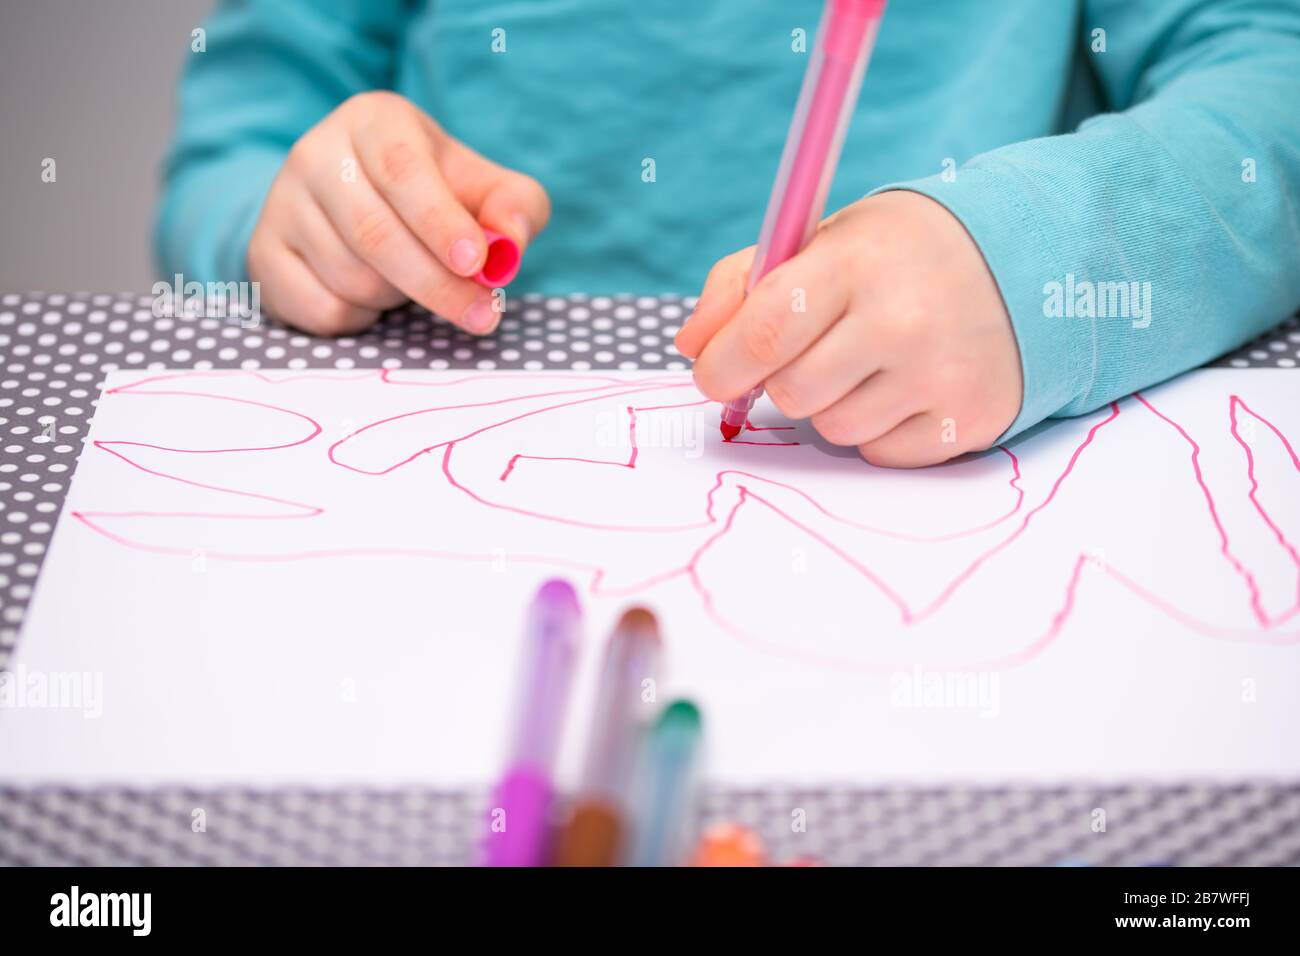 Primo piano di un ragazzo di cinque anni che gioca e disegna con una penna di colore rosa su una carta bianca posta su un tavolo con puntini bianchi. Foto Stock